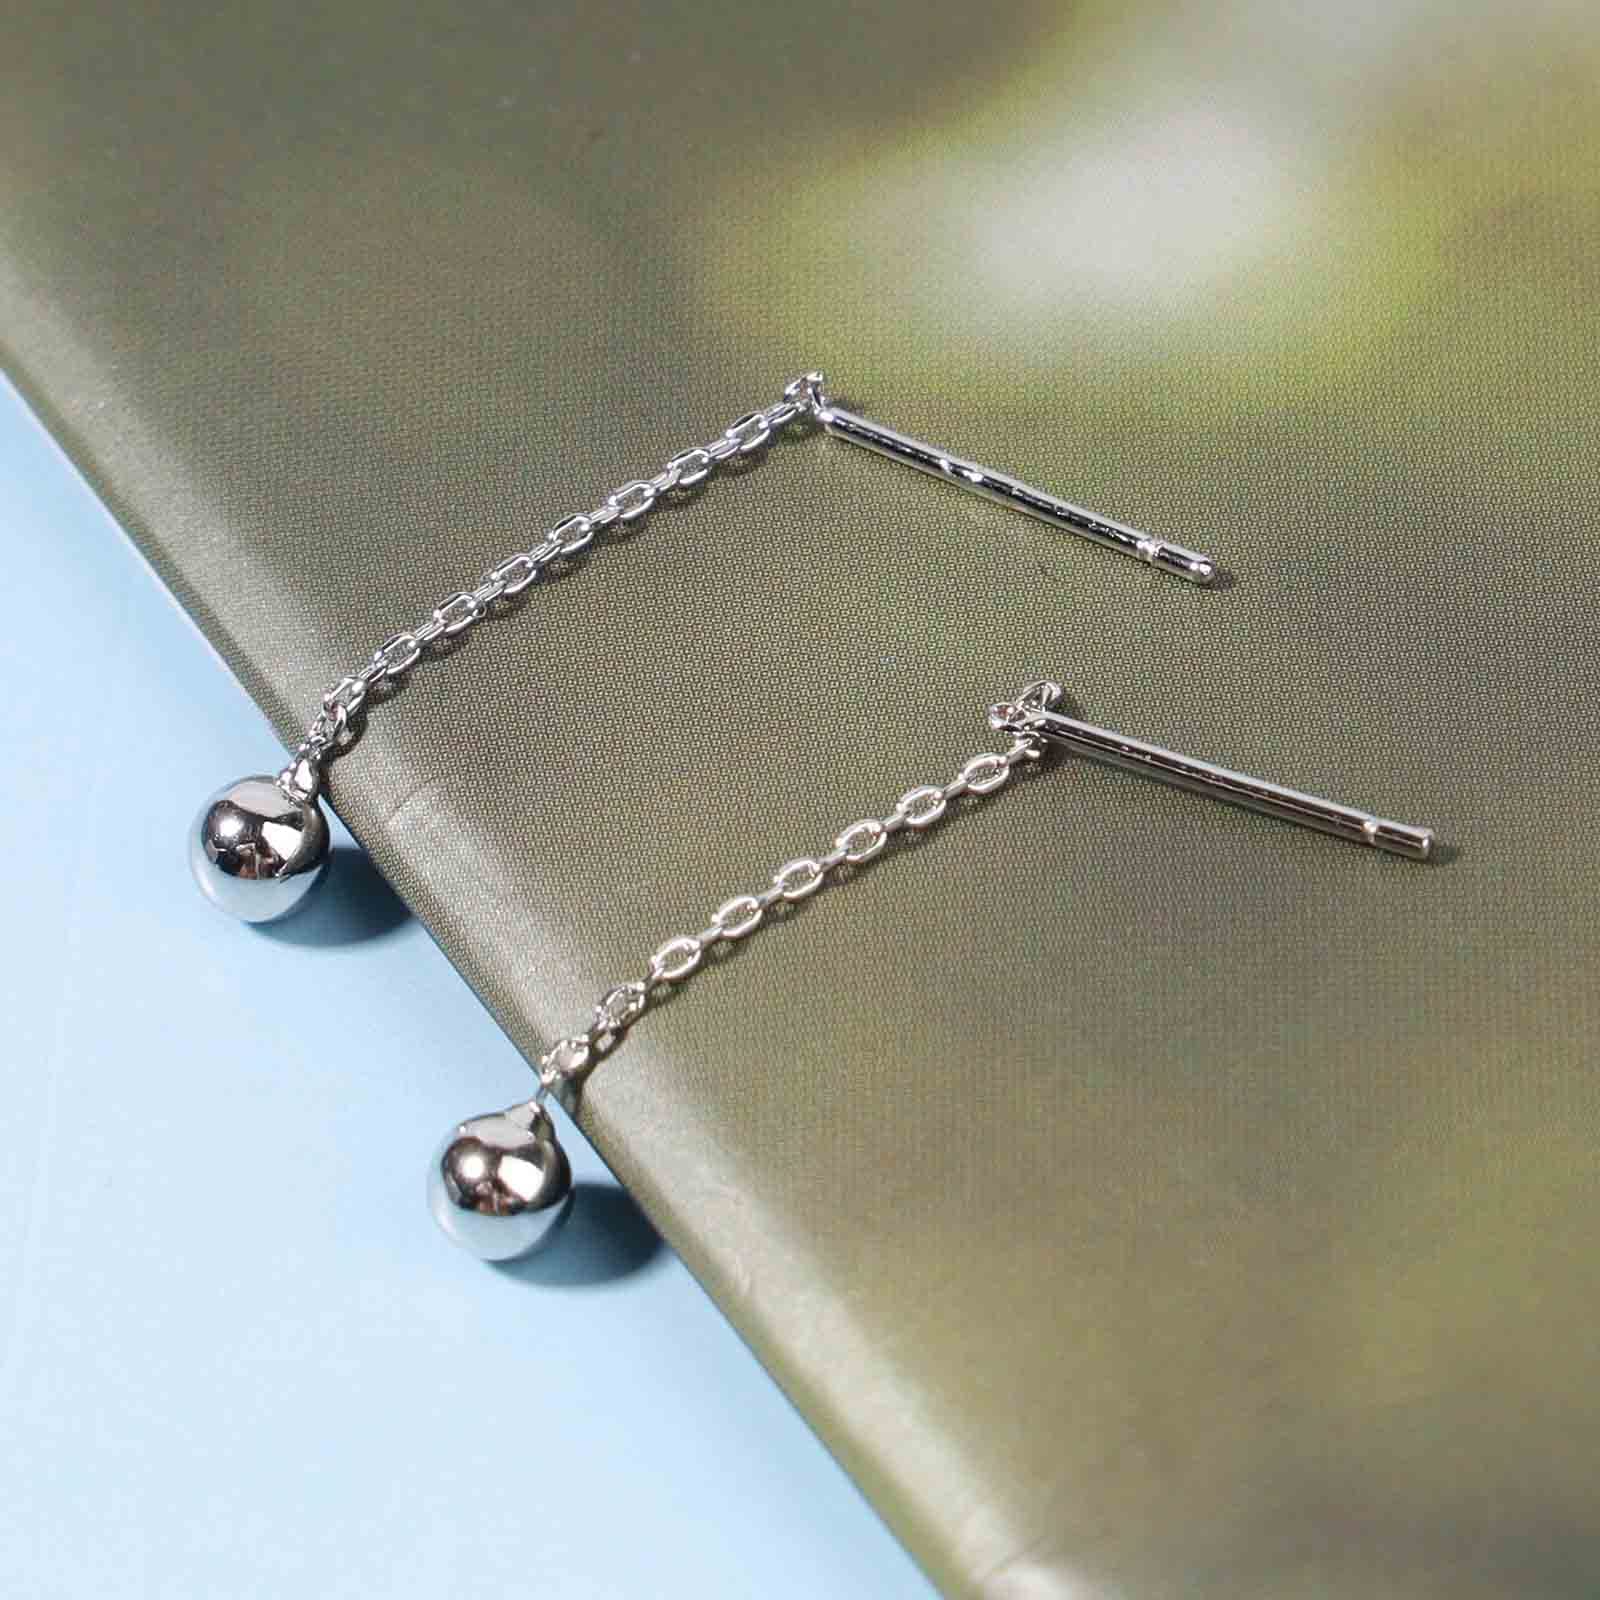 Yheakne Boho Bar Threader Earrings Silver Line Earrings String Drop Dangle Earrings Pull Through Long Chain Earrings Jewelry for Women and Girls